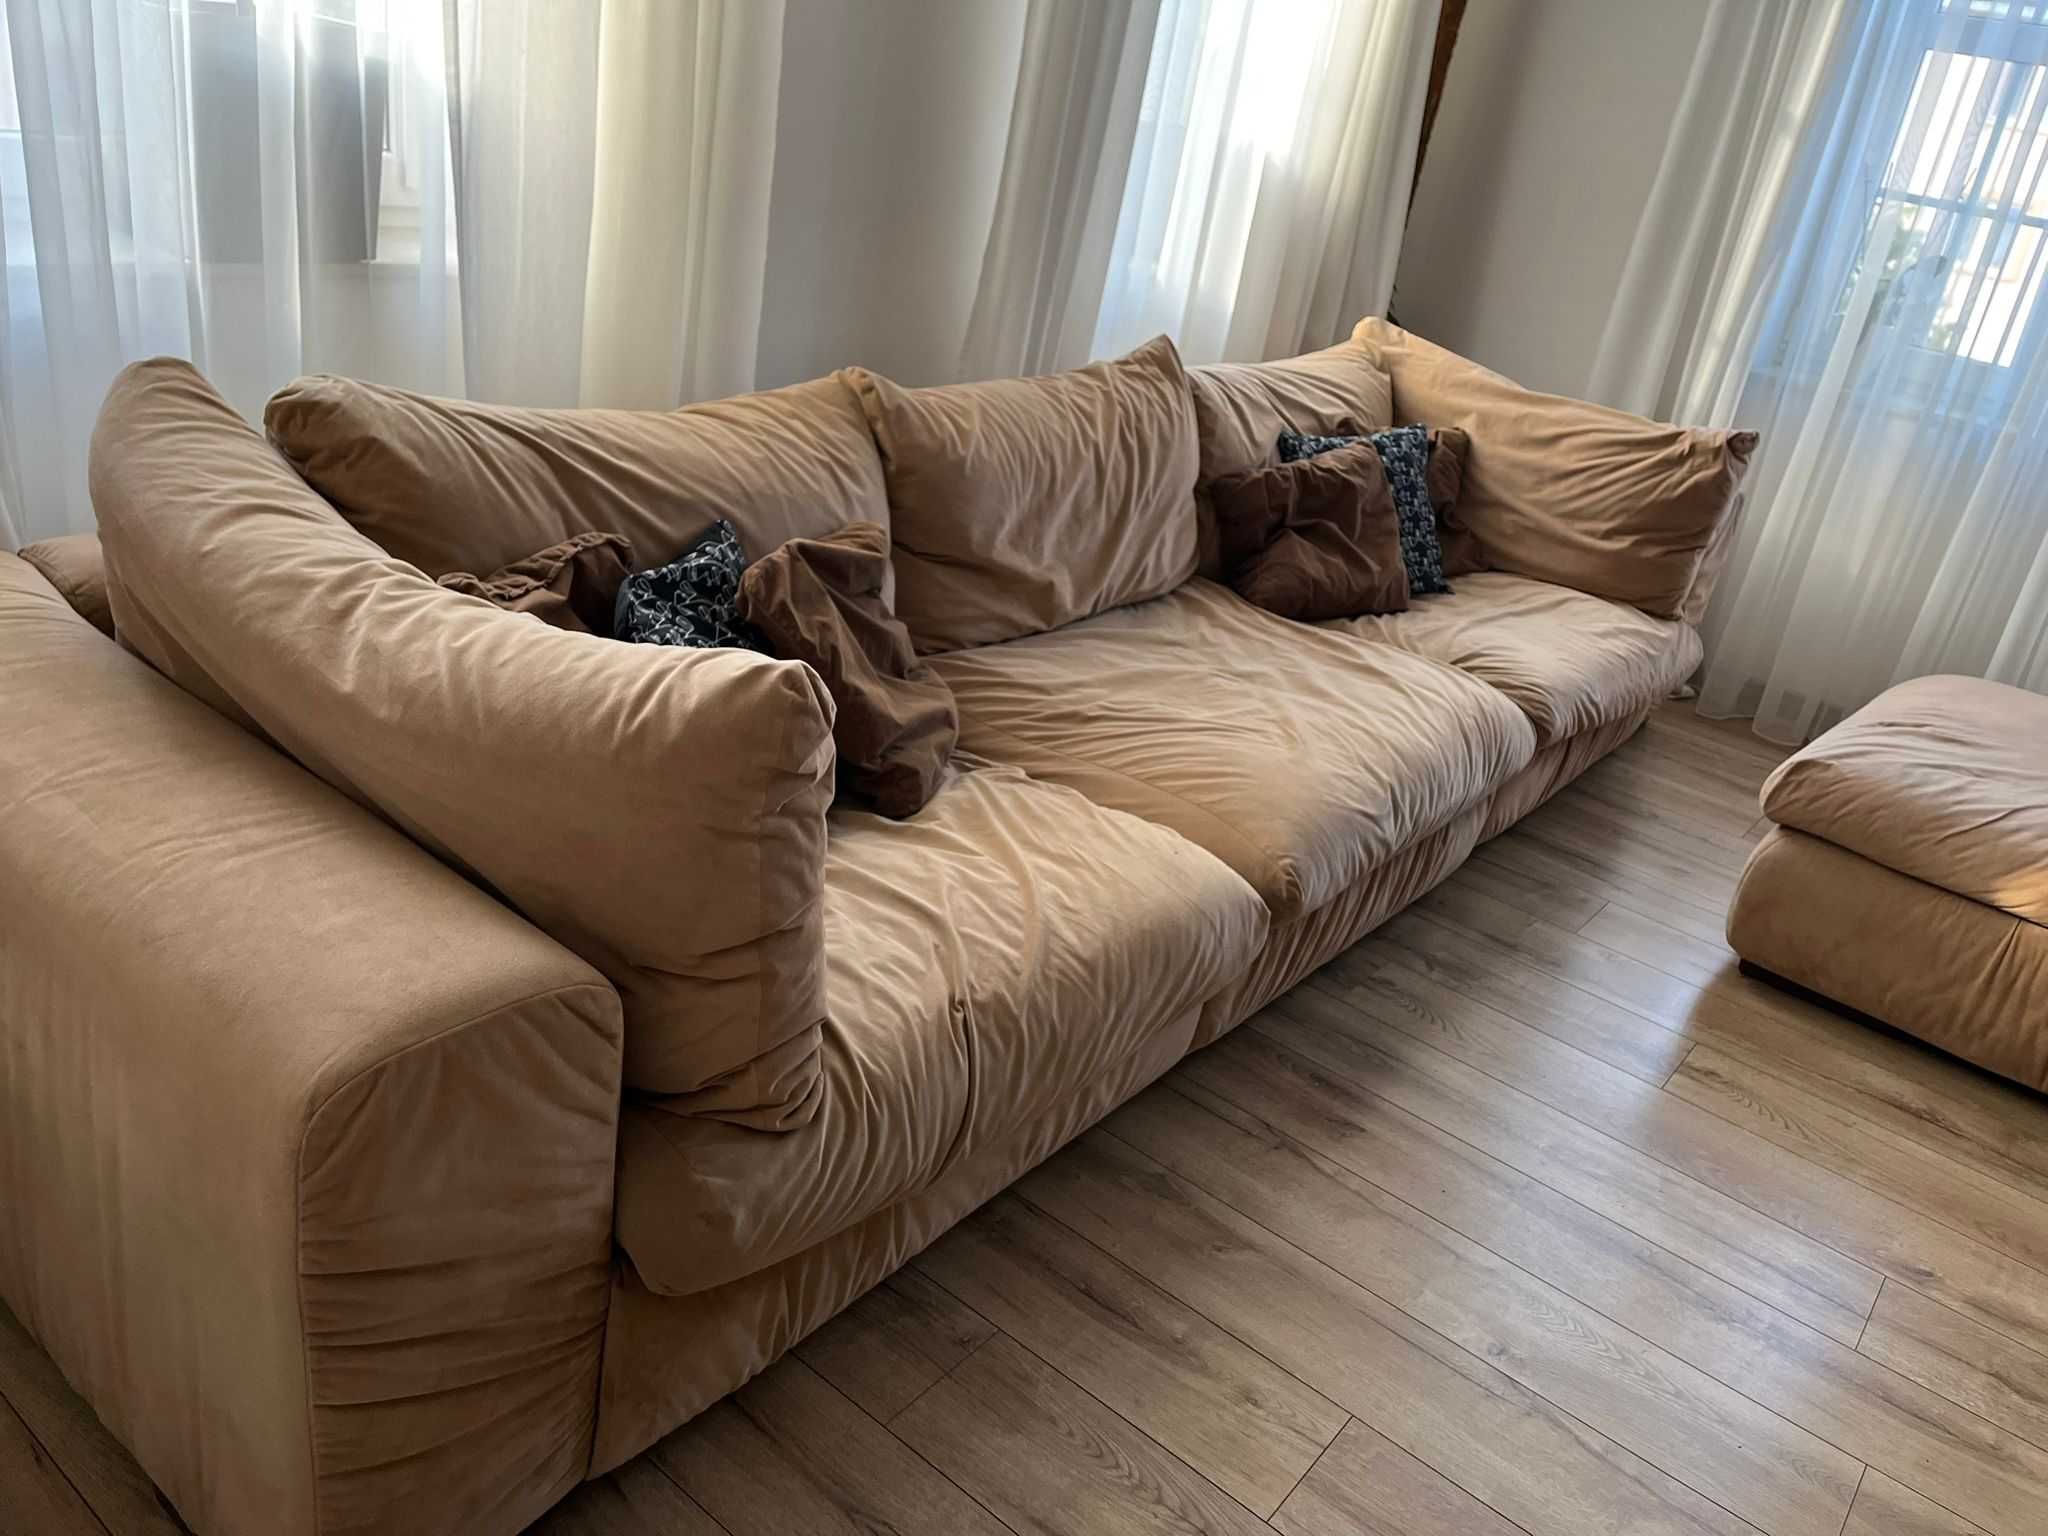 sofa / wypoczynek /kanapa 3,5m x 1,1m + 2 pufy 1m x 1m